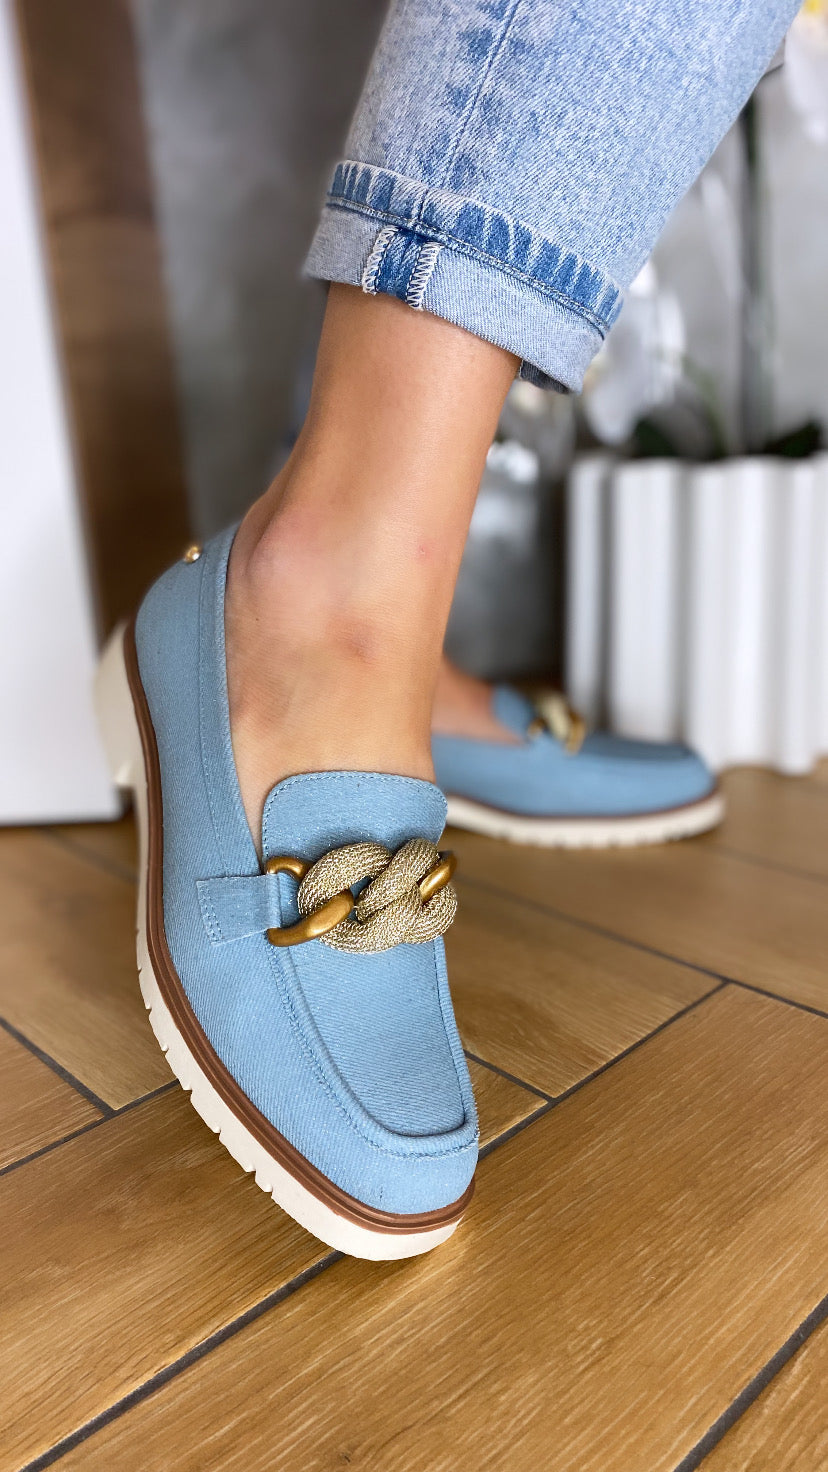 Qusar aqua aqua blue connect loafer